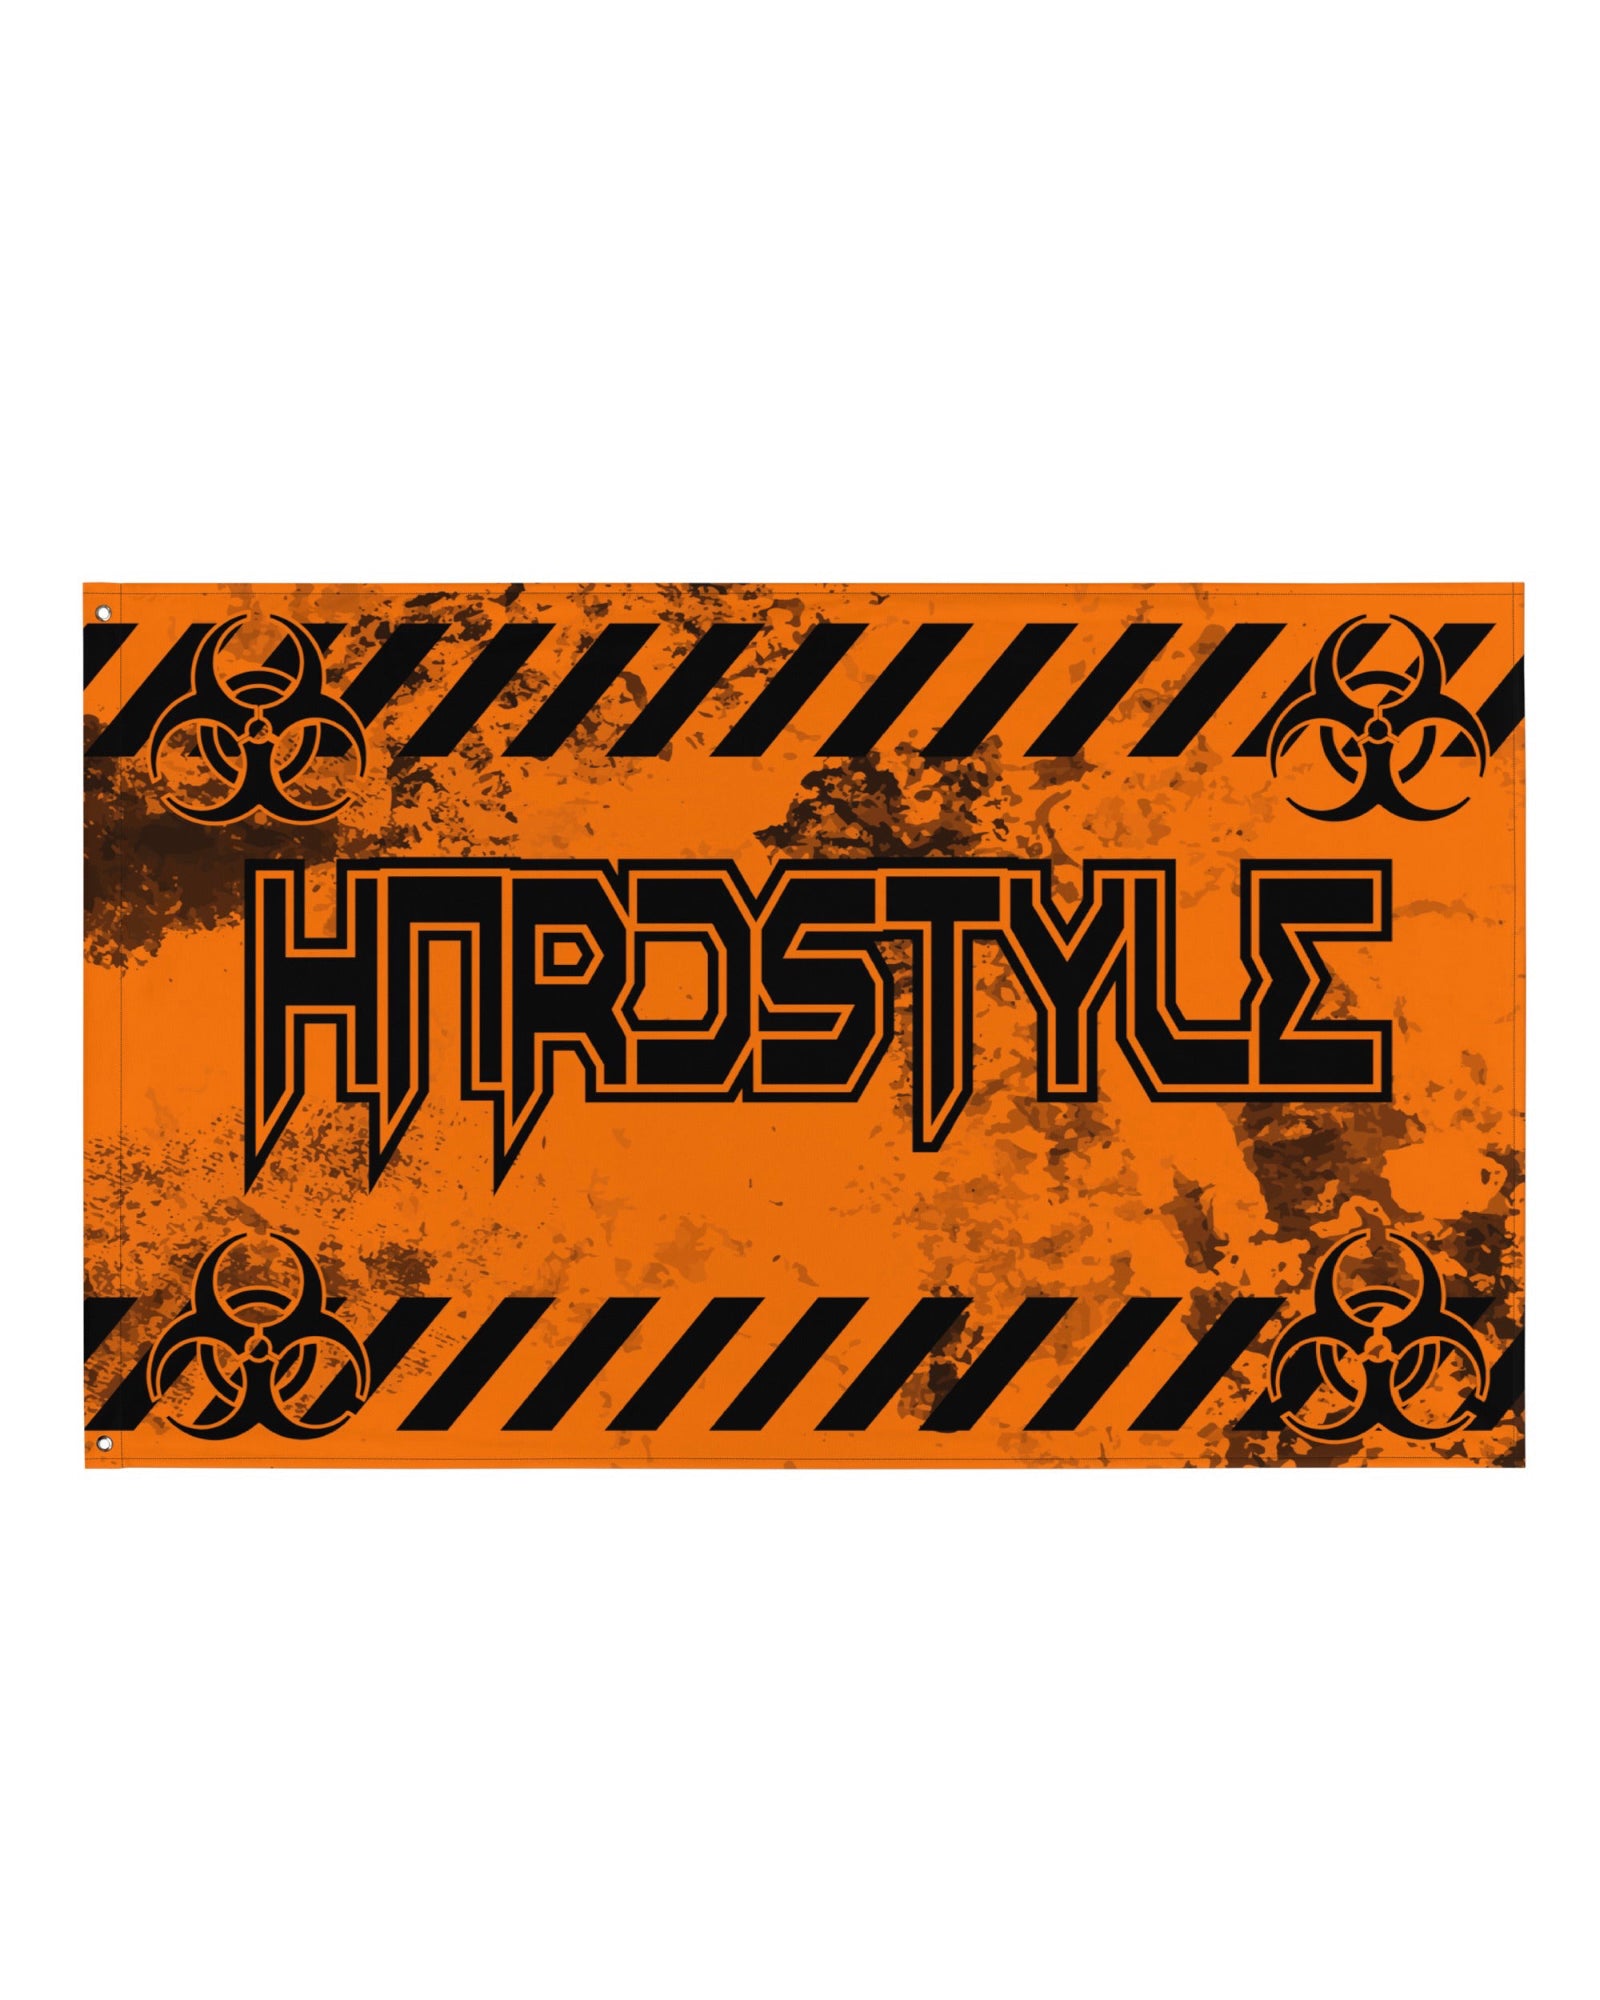 Hardstyle Rave Flag